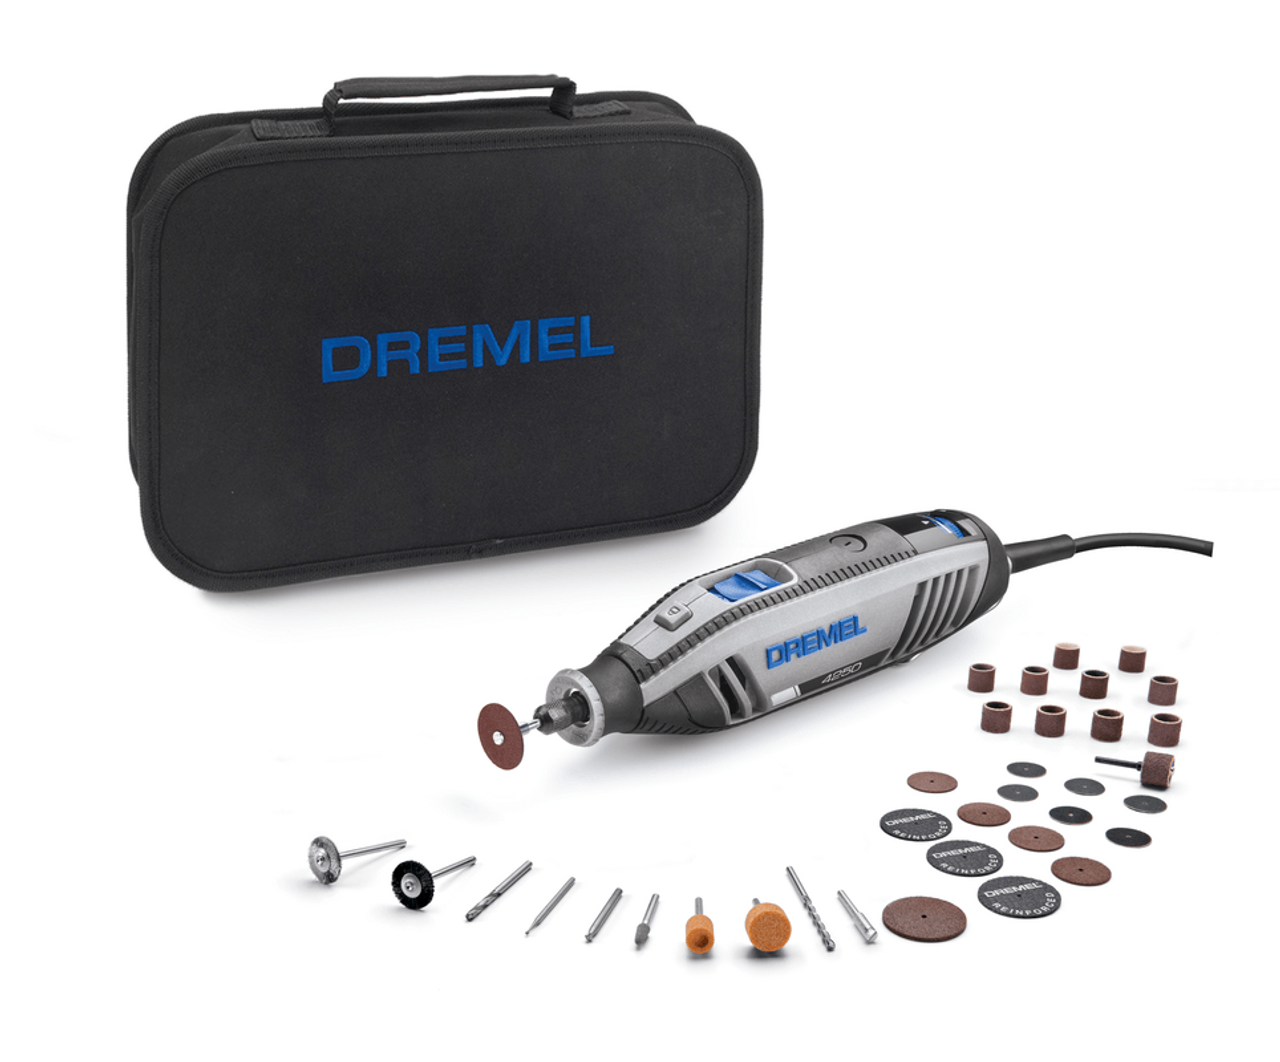 A closer look at the Dremel 4250-35 Multi-Tool